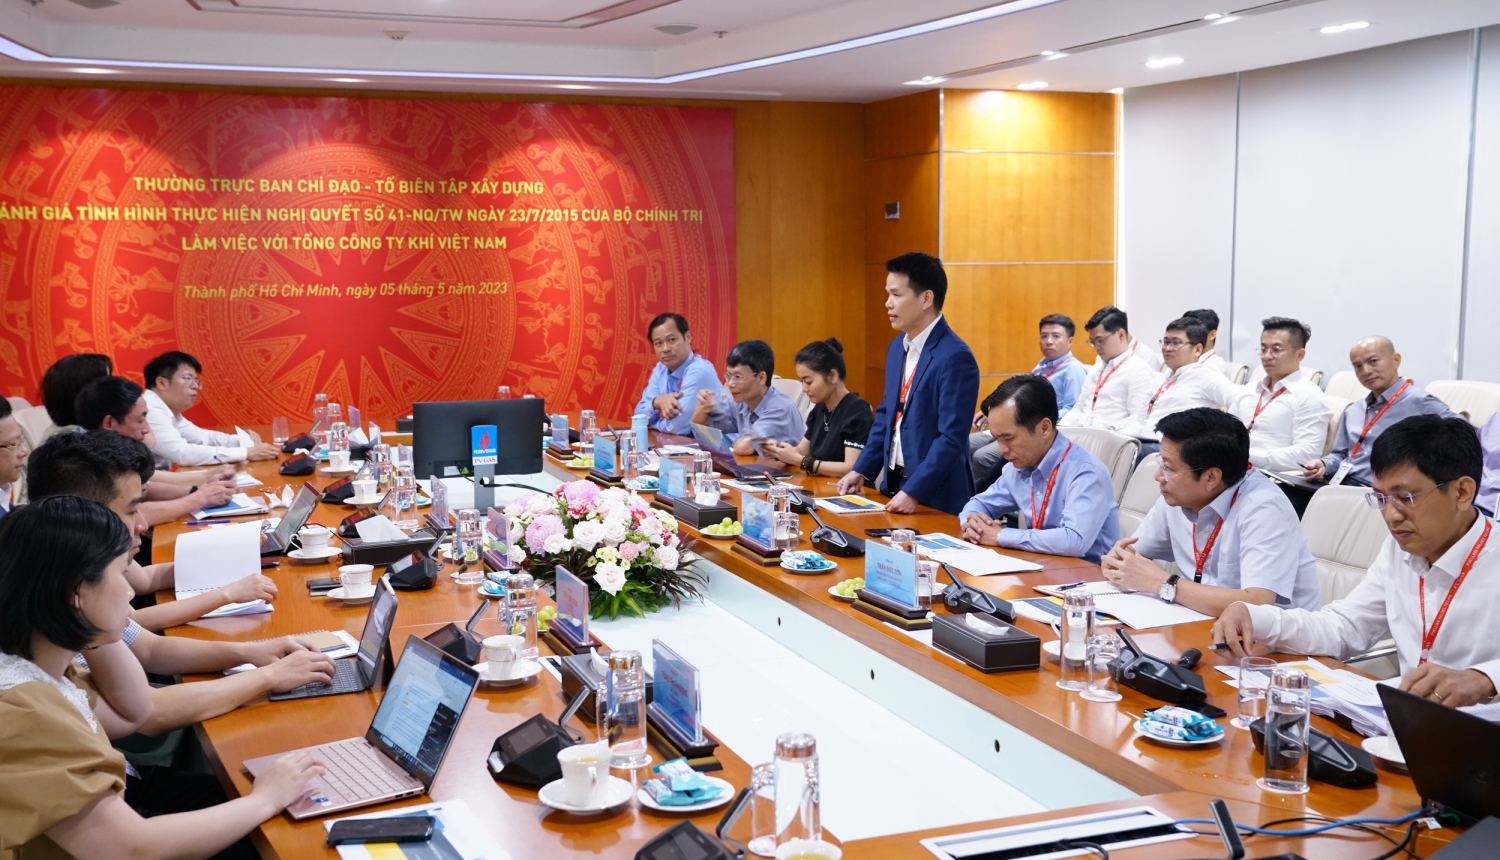 Đồng chí Phạm Văn Phong, Phó Tổng giám đốc, đại diện lãnh đạo PV GAS báo cáo tình hình thực hiện Nghị Quyết 41